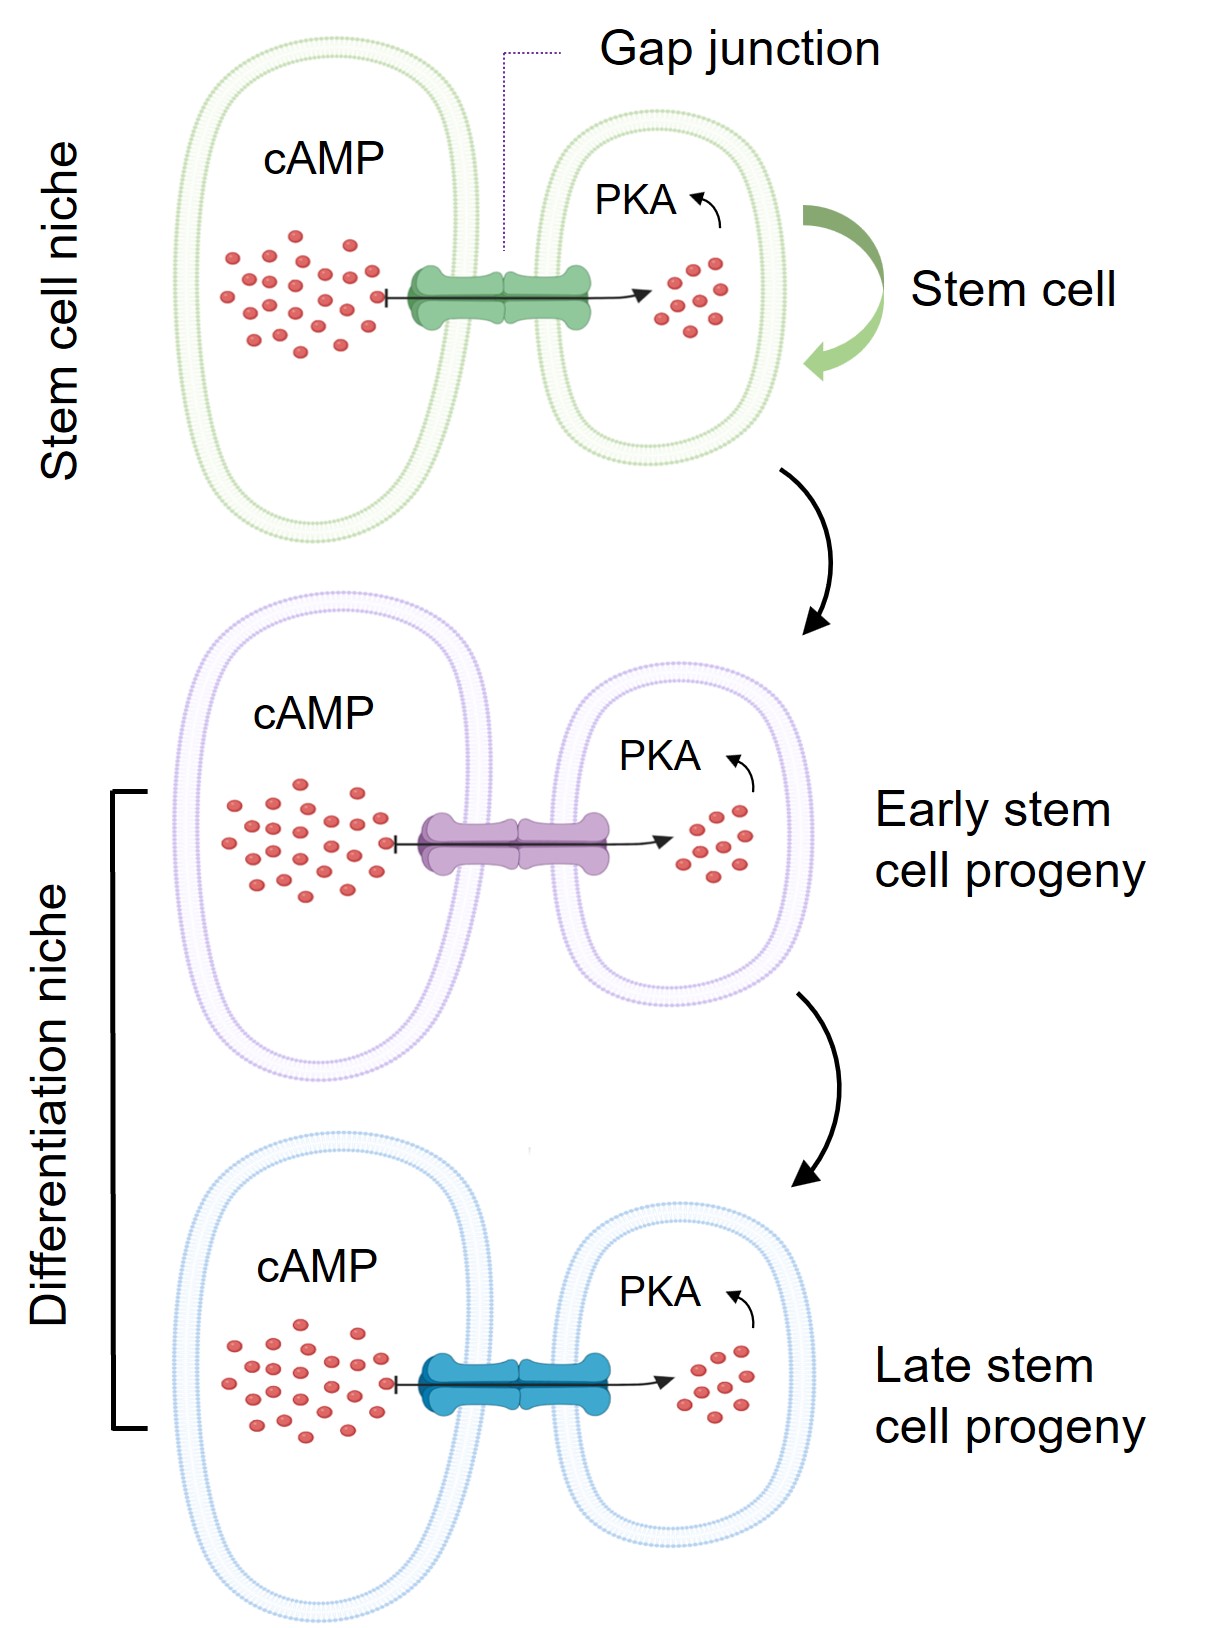 这个模型显示干细胞微环境如何利用其与干细胞之间的蛋白通道「间隙连接」（Gap junction），把干细胞微环境内的cAMP传送到干细胞及其子代细胞，以控制其分化为各种功能性细胞